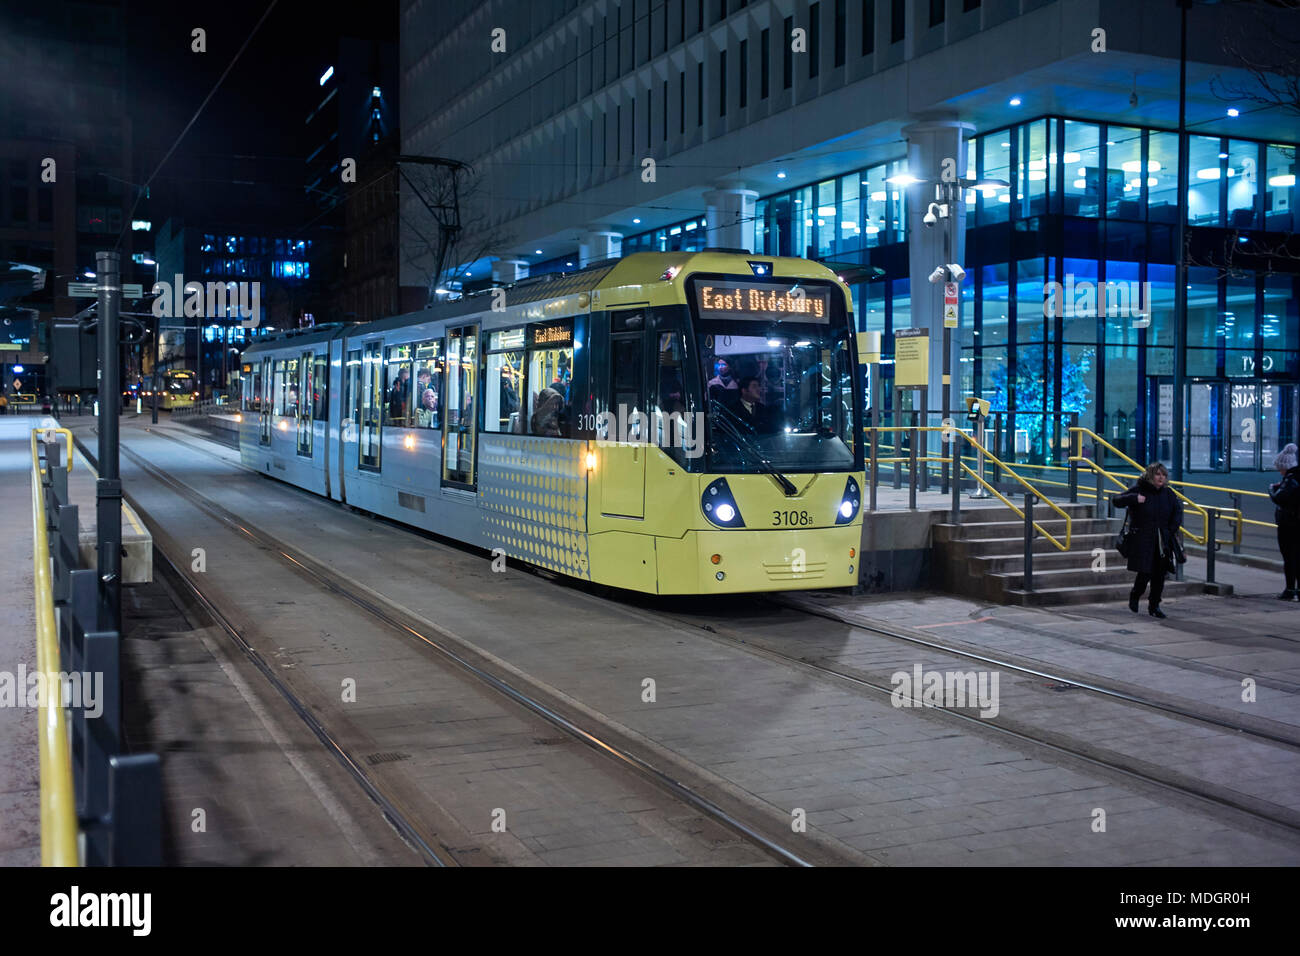 Manchester Straßenbahn zu East Didsbury im St. Peter's Square Stop in der Mitte der Stadt bei Nacht Stockfoto